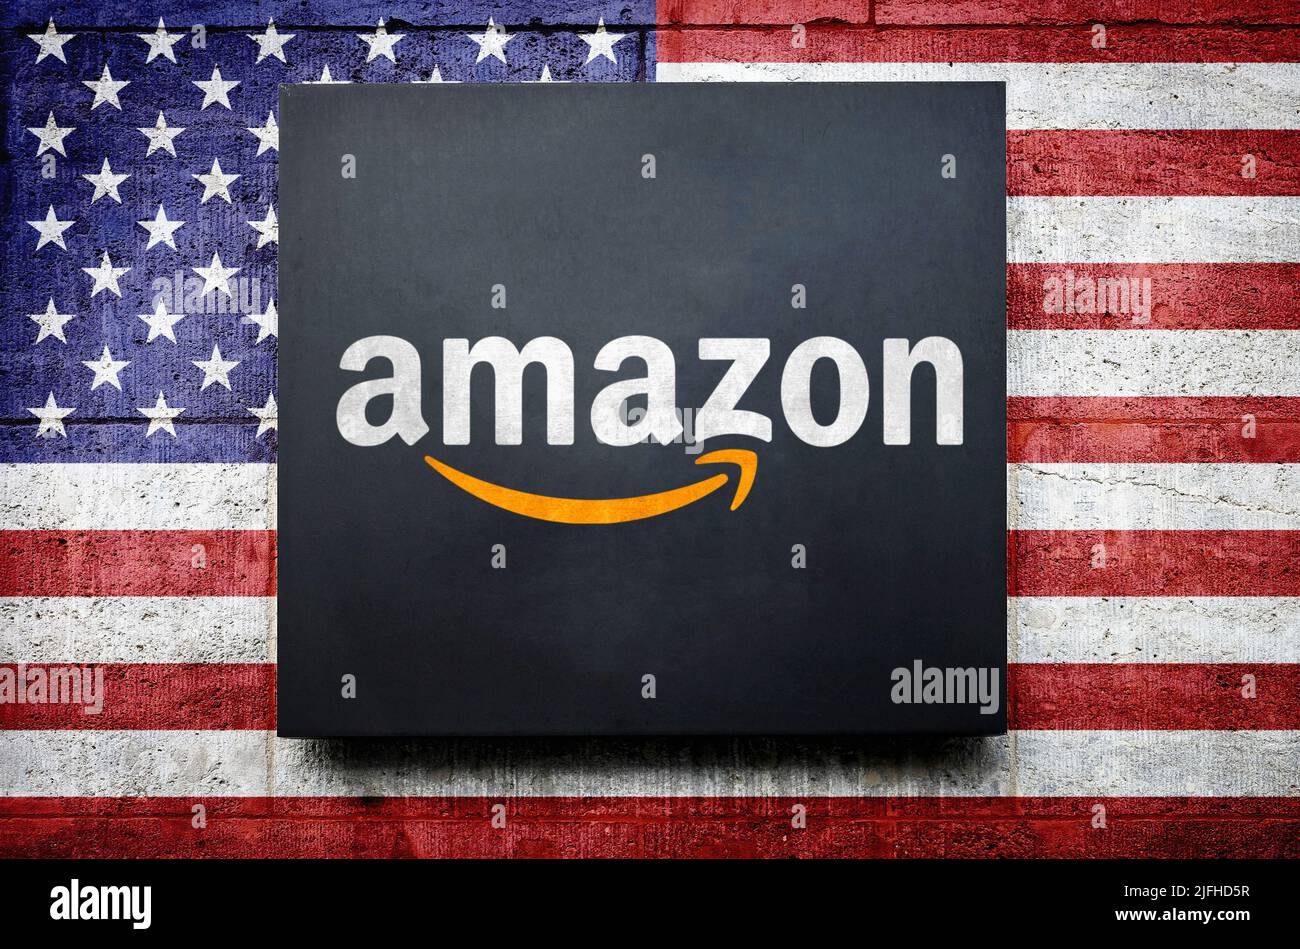 Amazon company Stock Photo